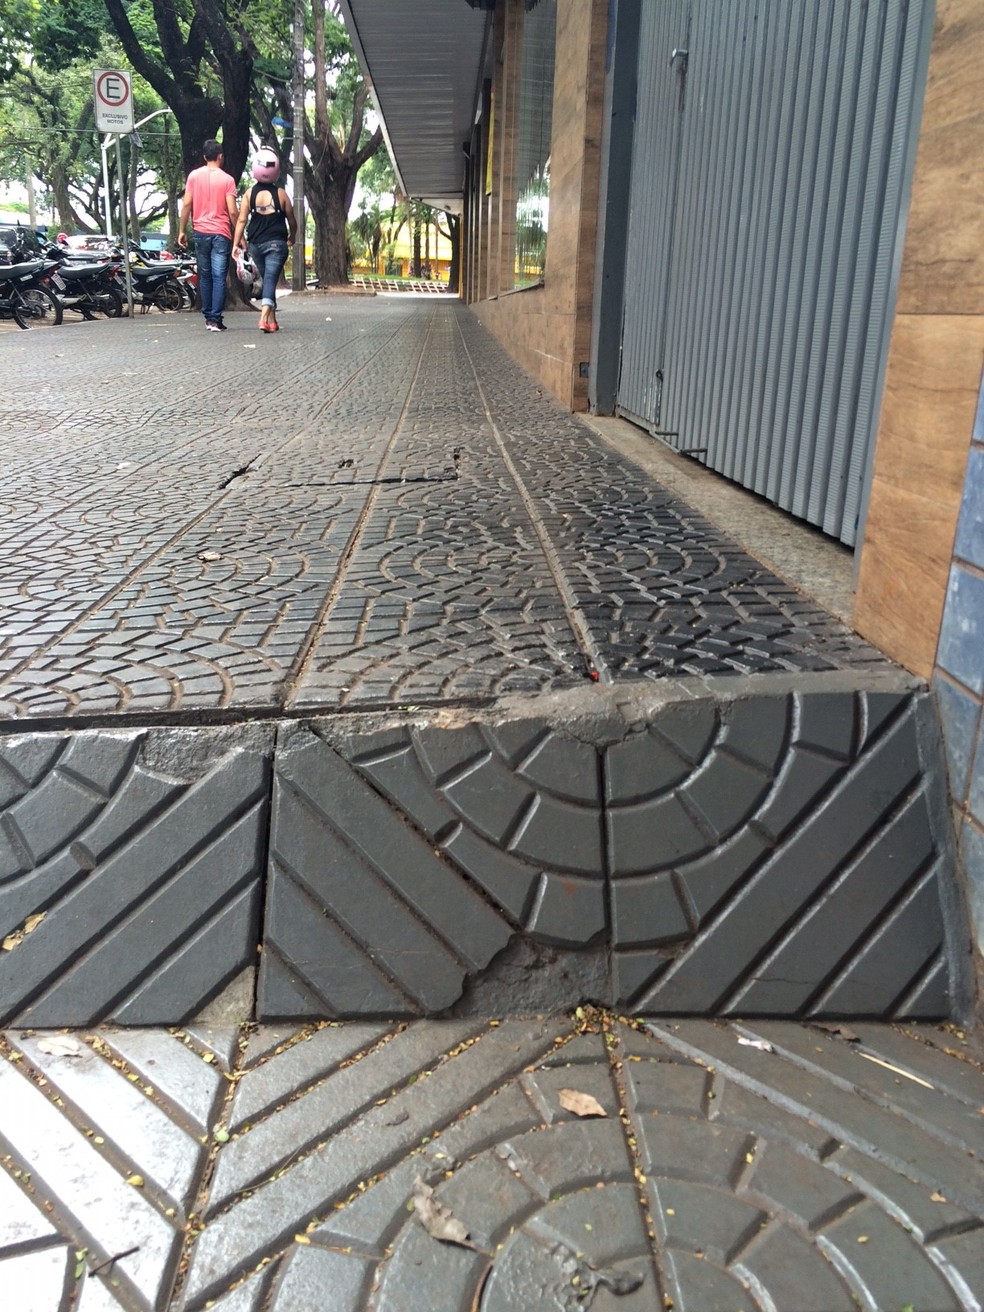 Calçada da Avenida Laguna, na Vila Operária, em Maringá, onde mulher caiu e fraturou cotovelo — Foto: Lafayette Braz Deusdara Tourinho/Arquivo pessoal